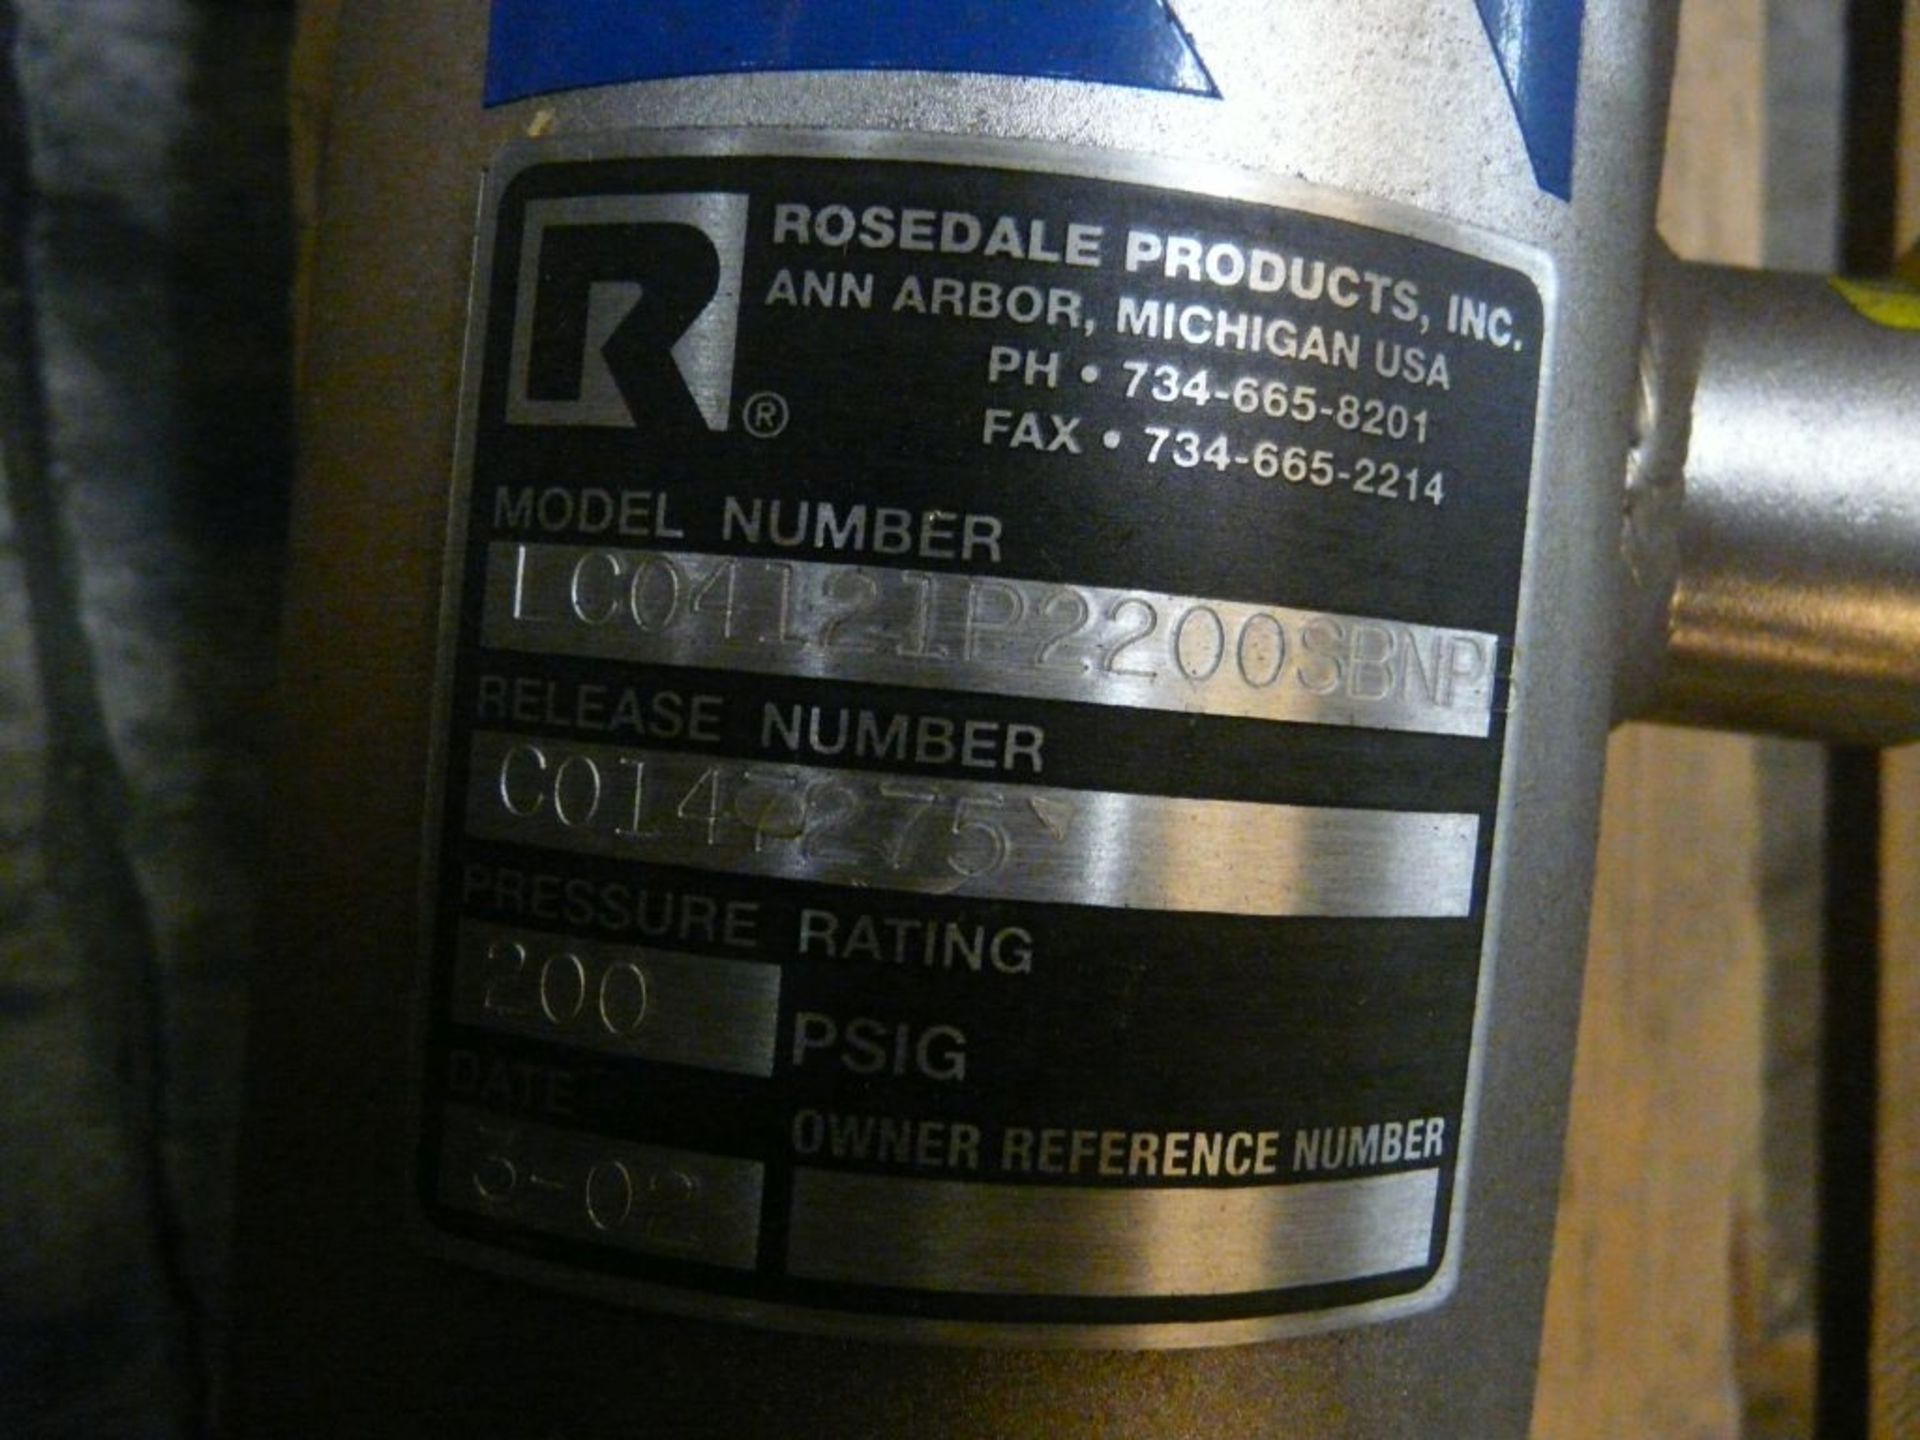 Rosedale Bag Filter/Strainer | Model 4; Model No. LC04121P2200SBNP8; 200 PSIG - Image 2 of 3